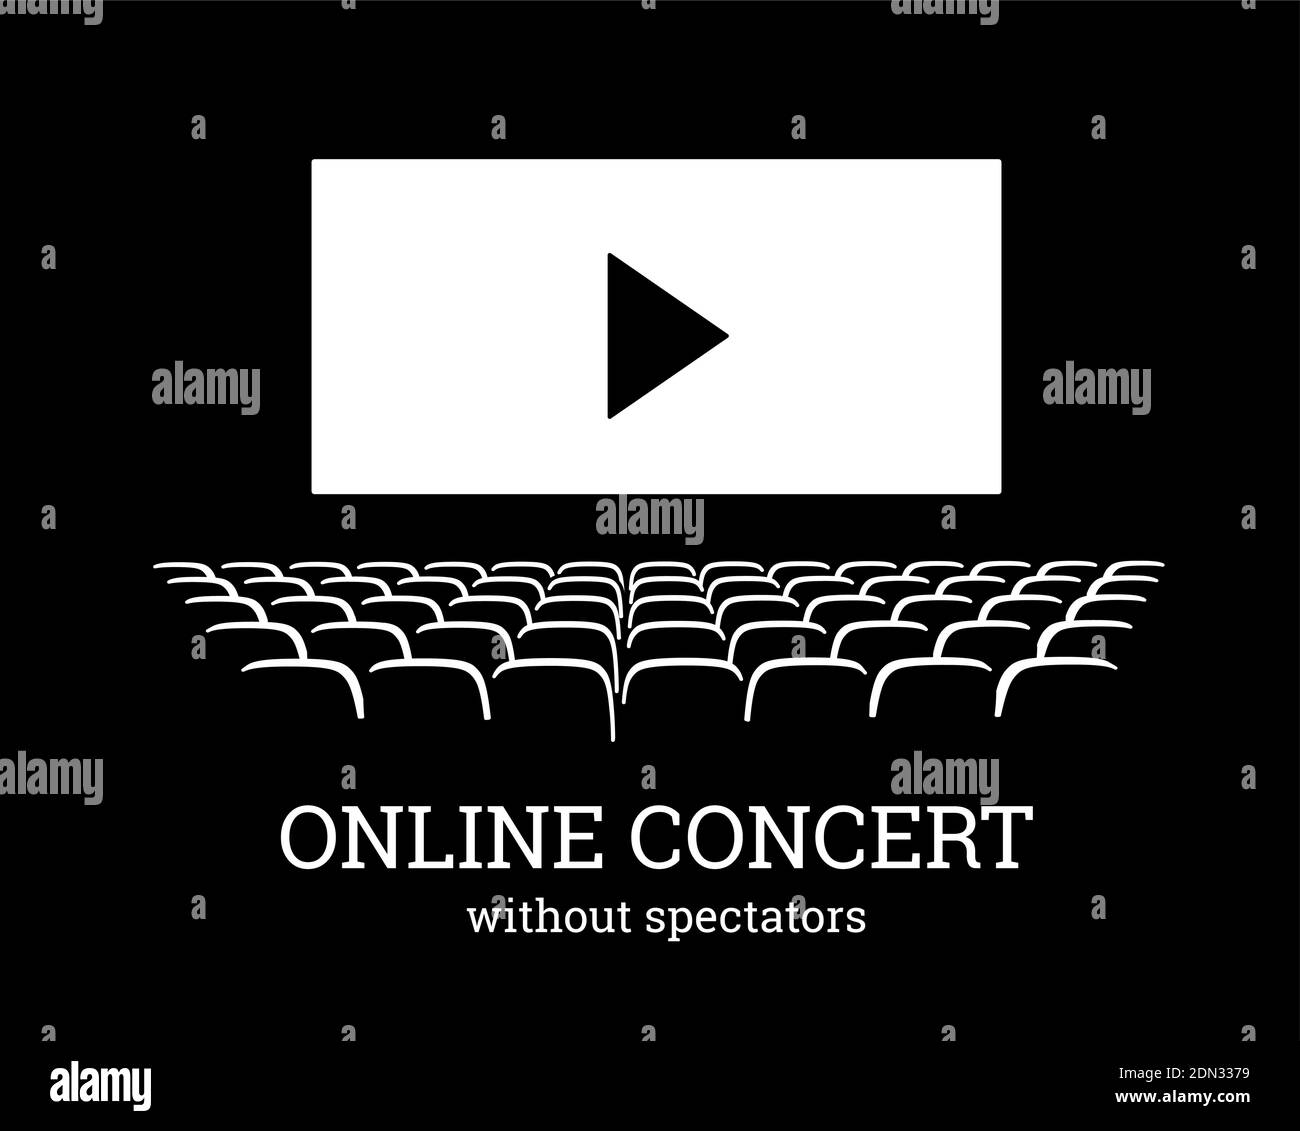 Online-Konzert ohne Zuschauer. Vektordarstellung mit leerem Auditorium und Videoplayer auf dem Bildschirm. Gegen die Ausbreitung des Coronavirus, covid-19 Stock Vektor